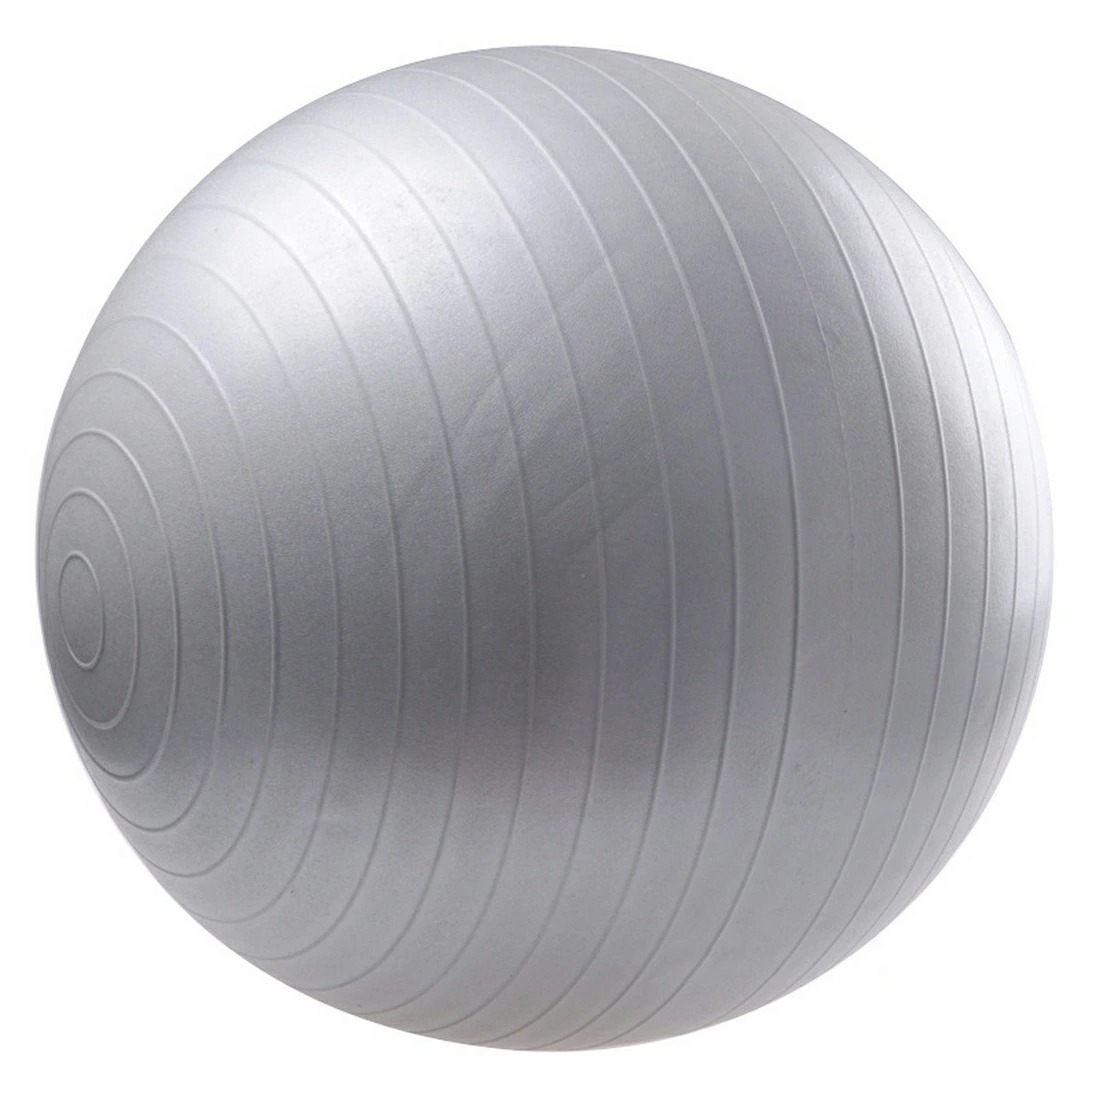 Balance Ball 65-см фитнес-мяч пилатесбольный стул йога, толстый SL1068-Gge